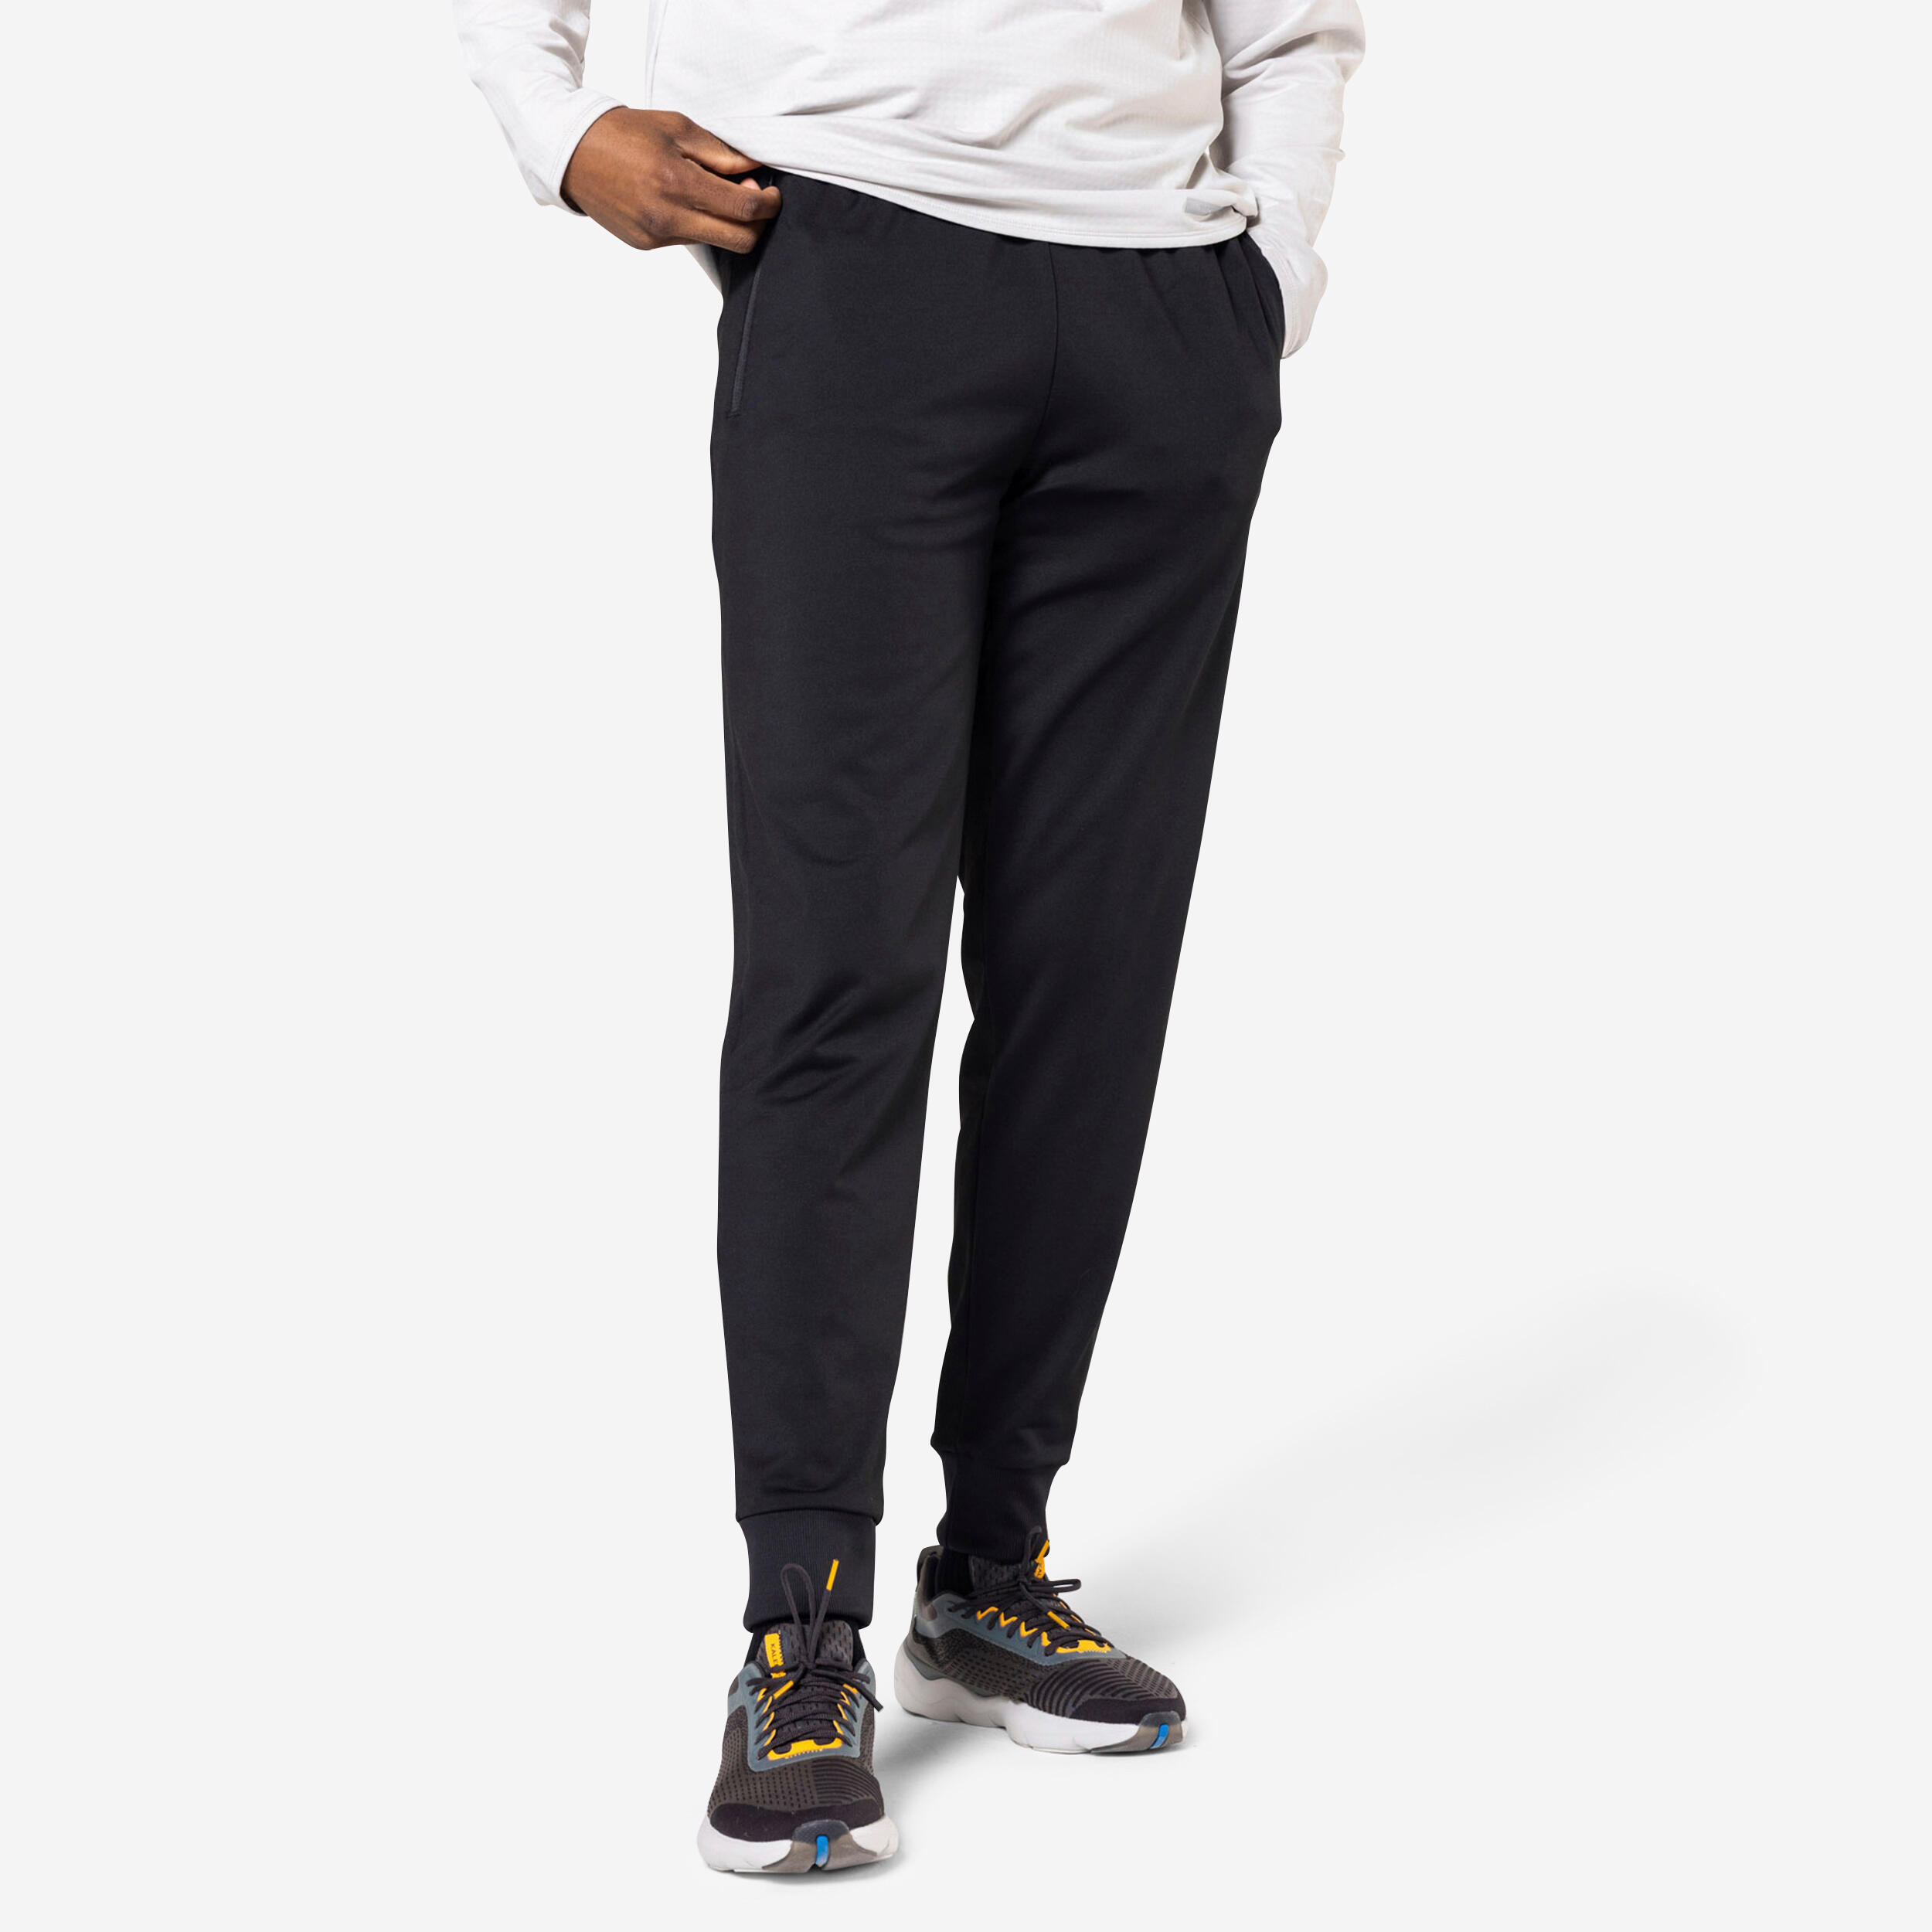 Mens Premium Track Trouser - Black - At Best Price | Fabrilife